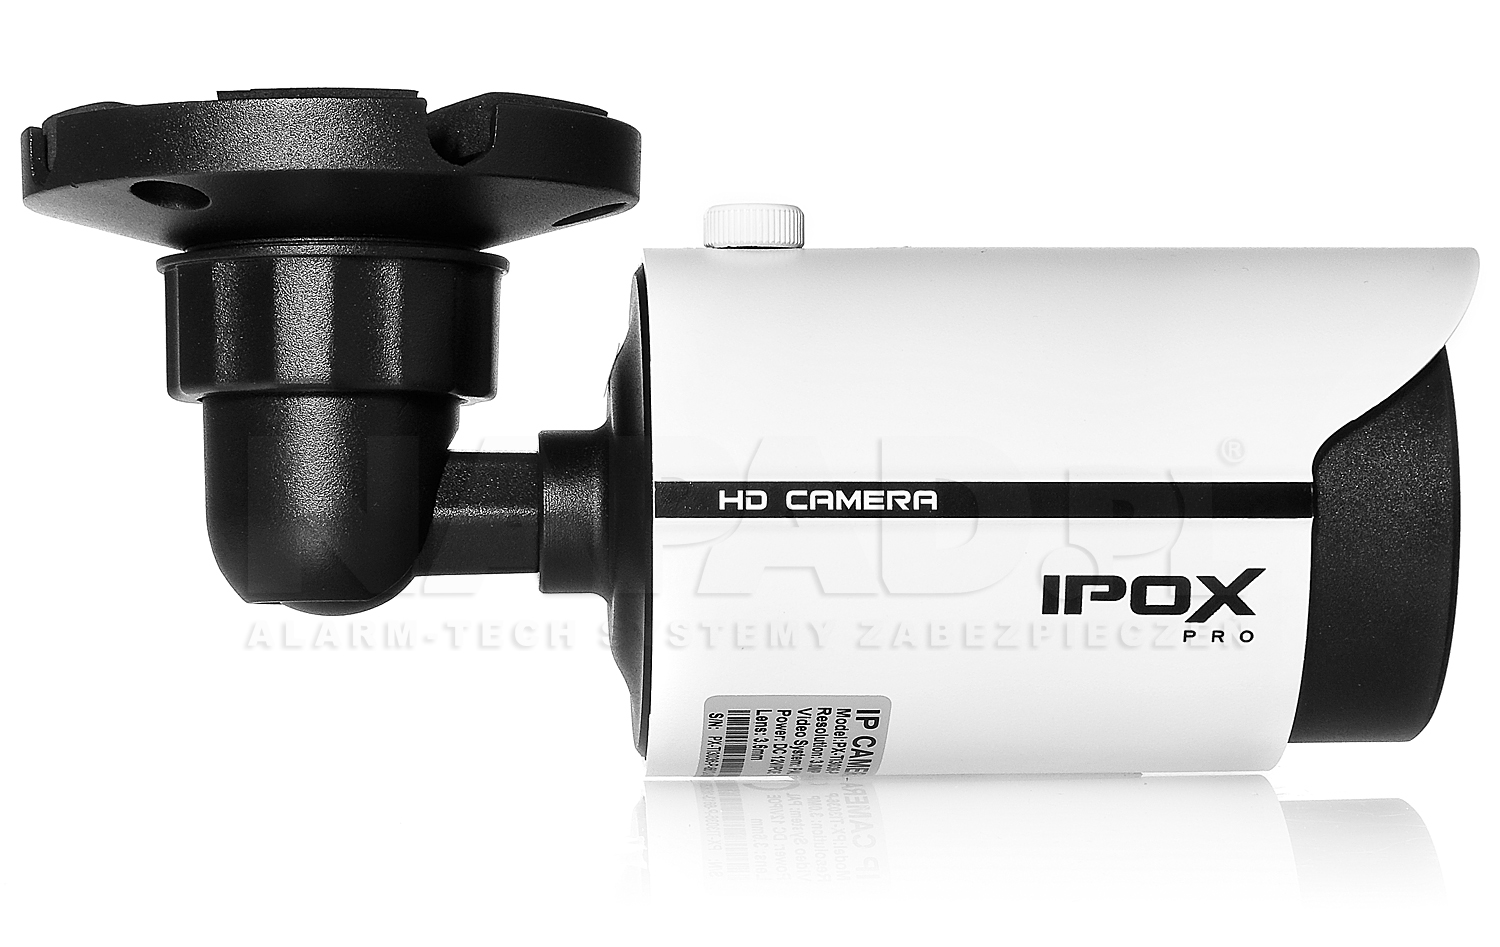 Kamera z uchwytem 3D, klasą szczelności IP66 i ochroną mechaniczną IK10.